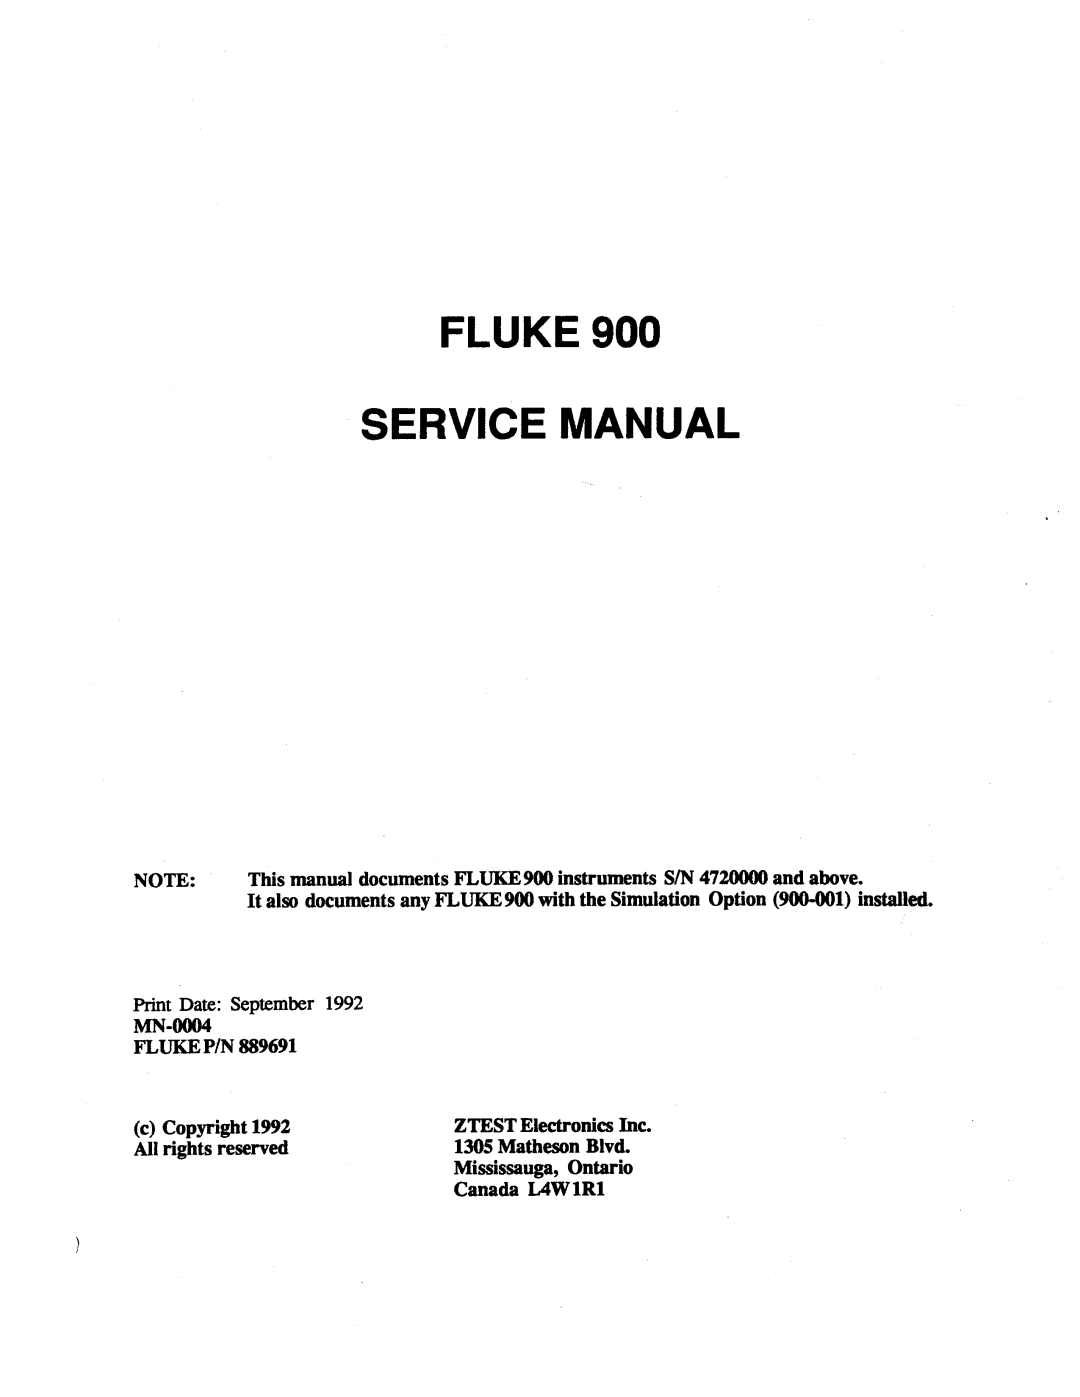 Fluke 900 manual 